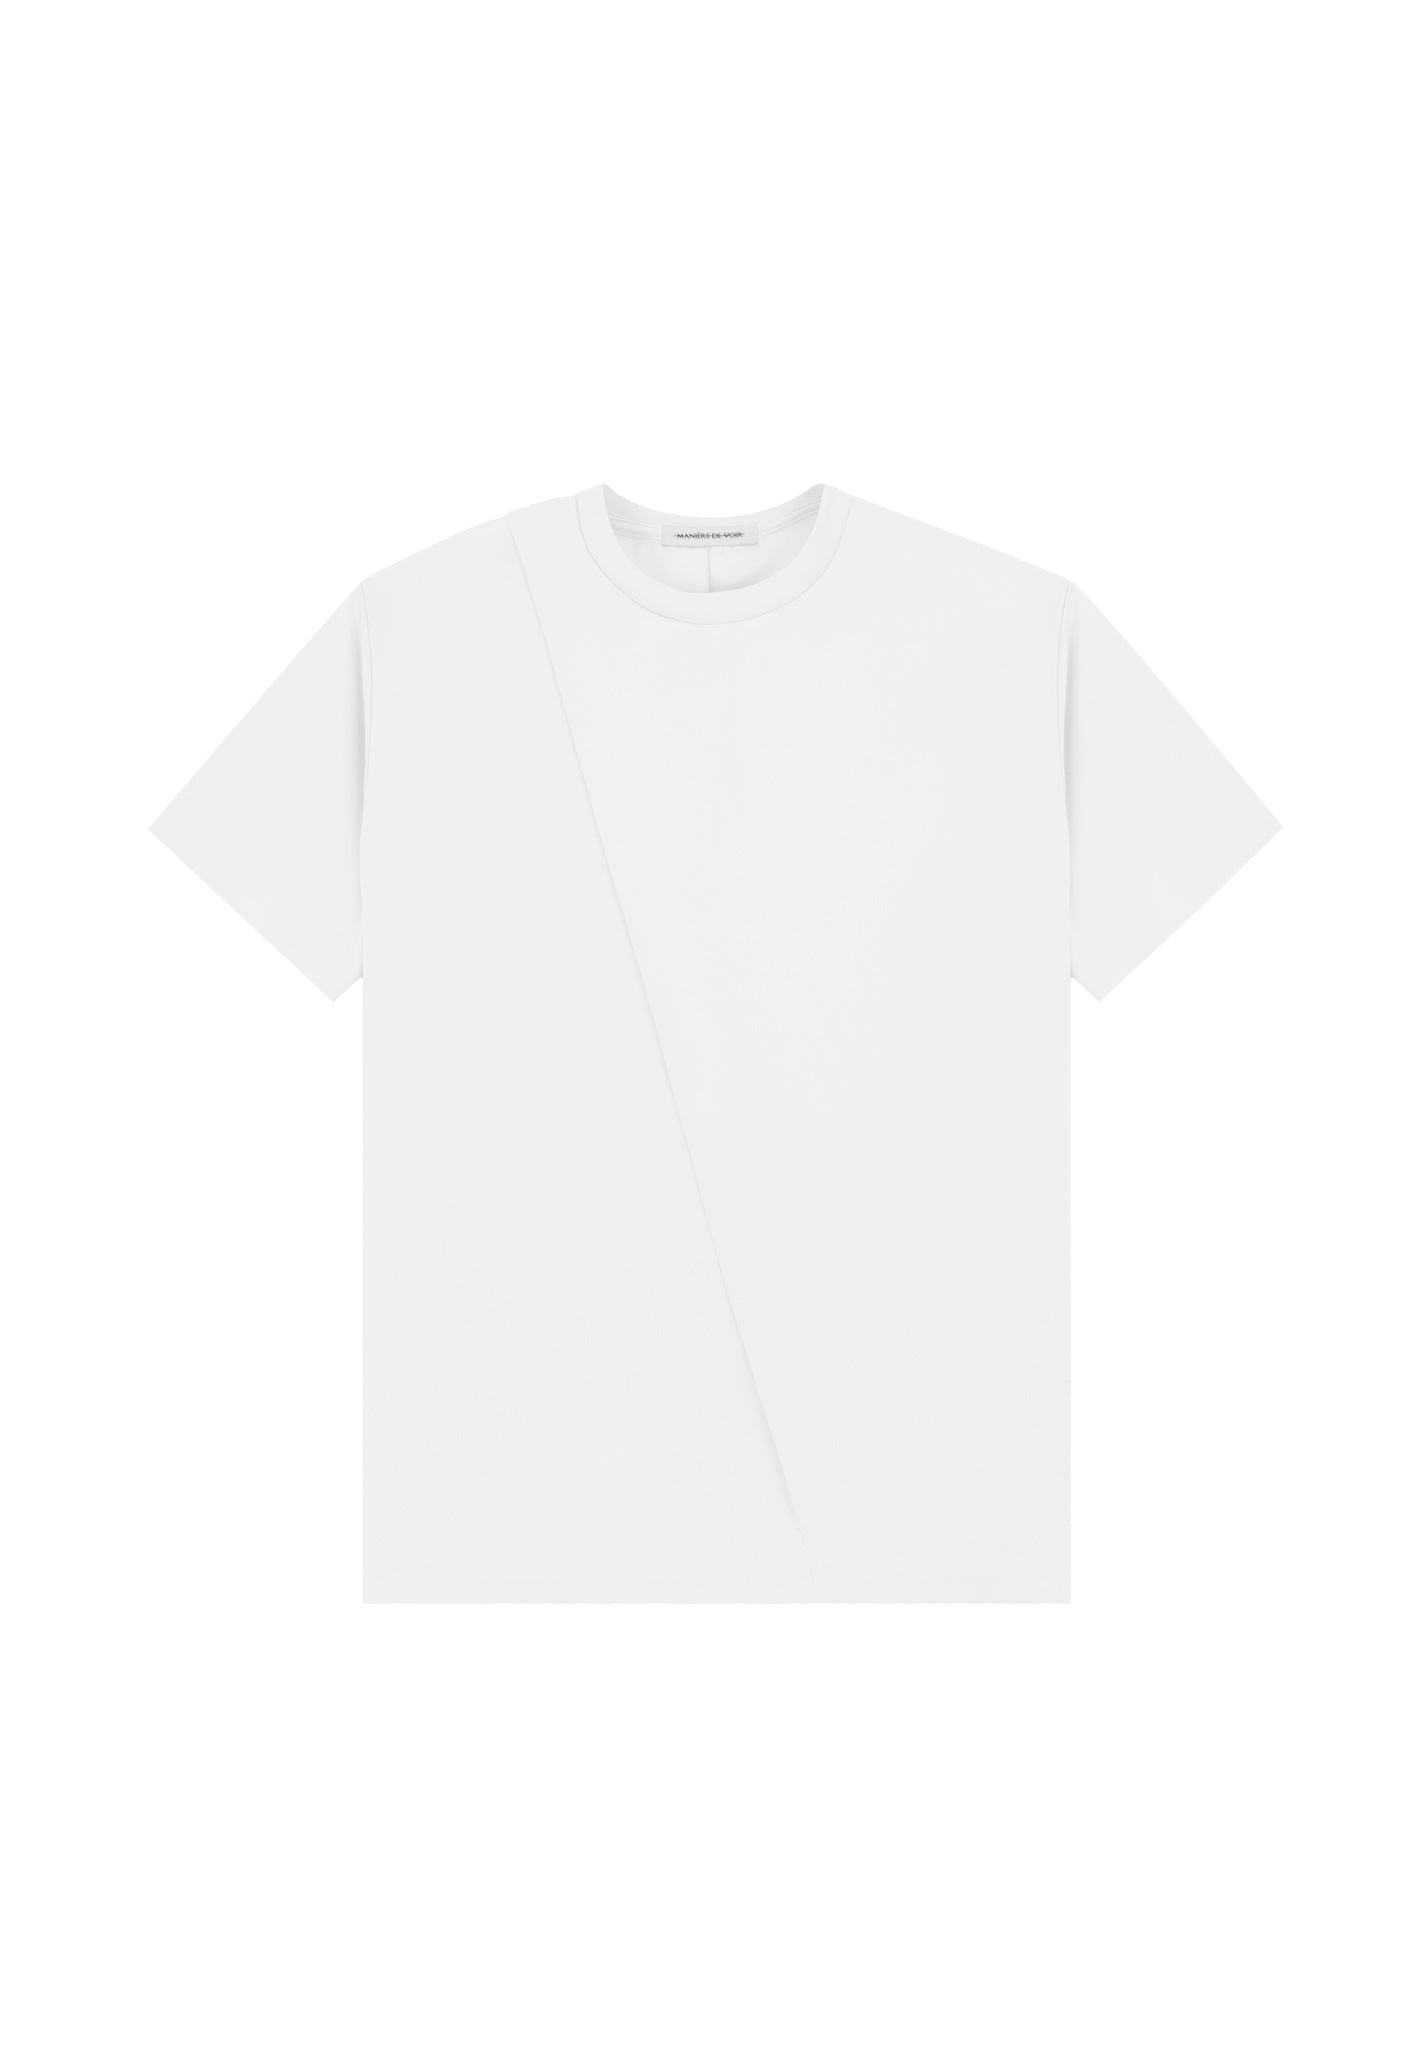 Mens Off-White T-Shirts